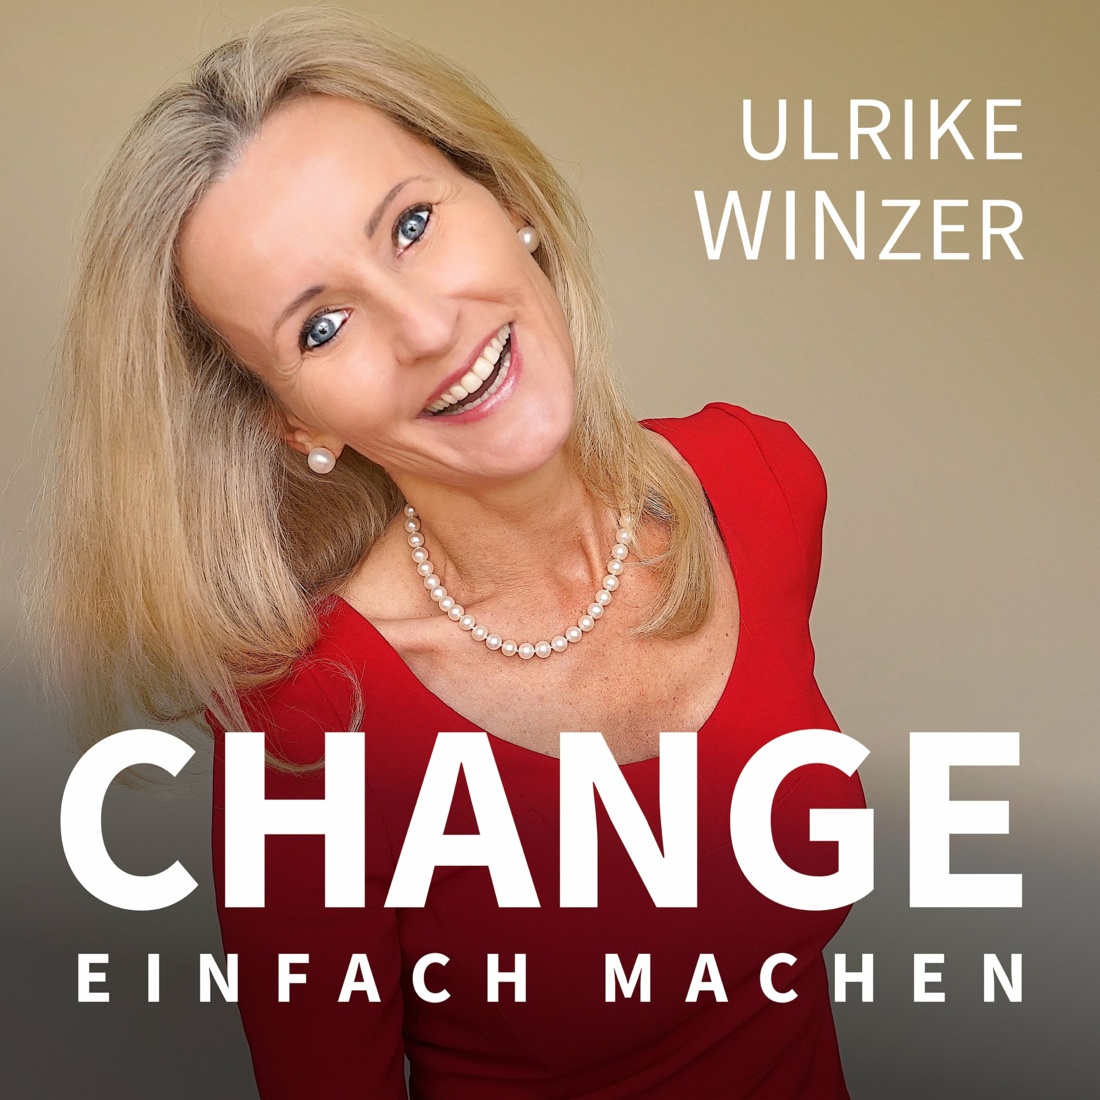 Ulrike Winzer